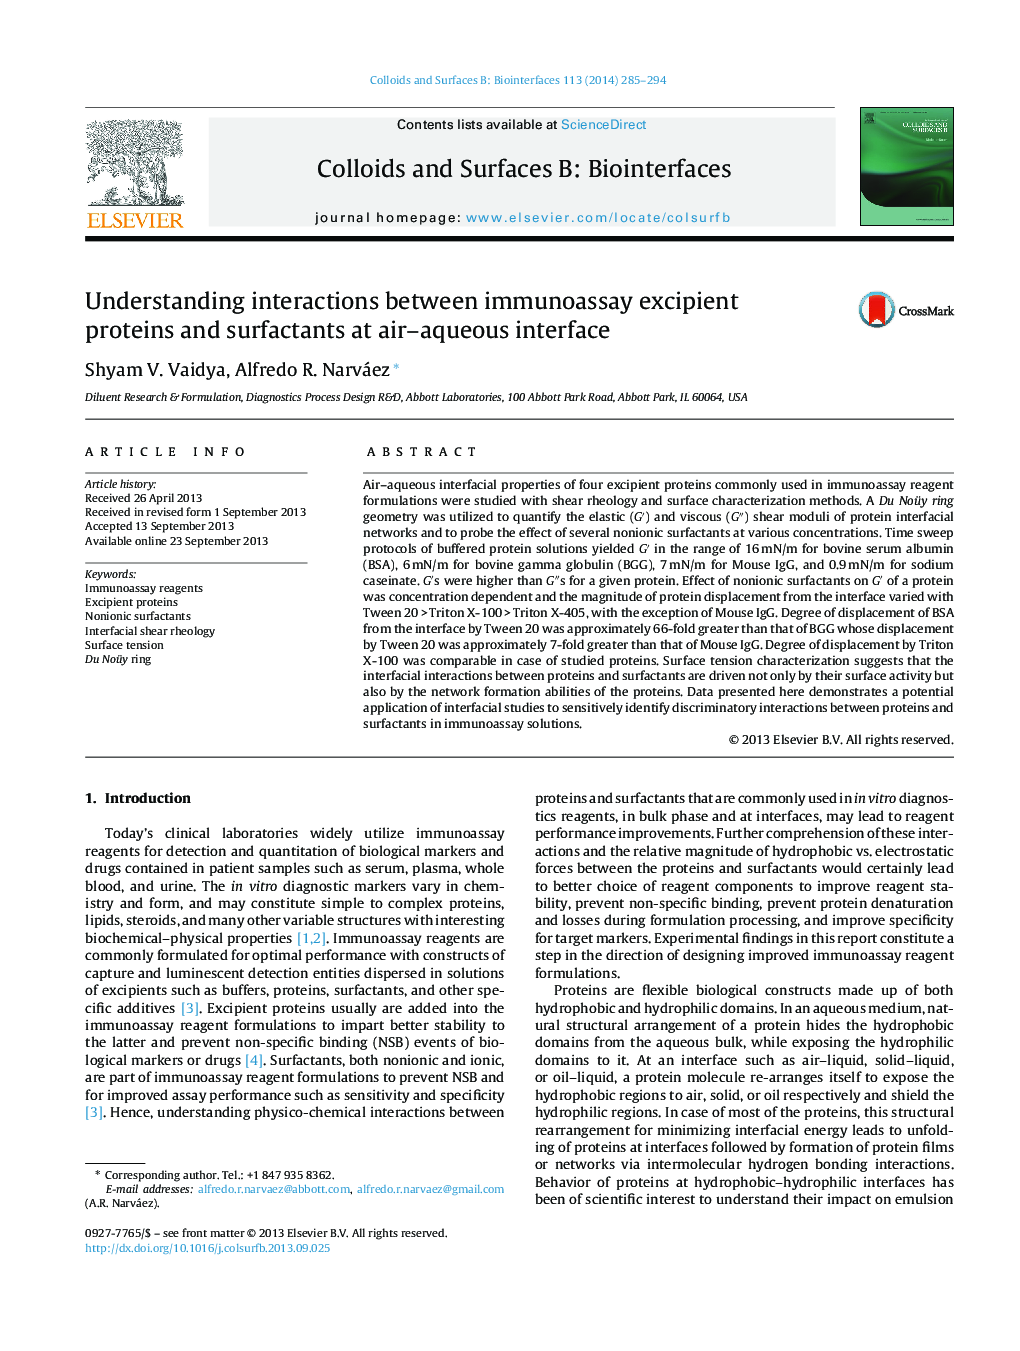 درک اثرات متقابل بین پروتئین ها و سورفکتانت های ایمونوسیتی در محیط آب و فاضلاب 